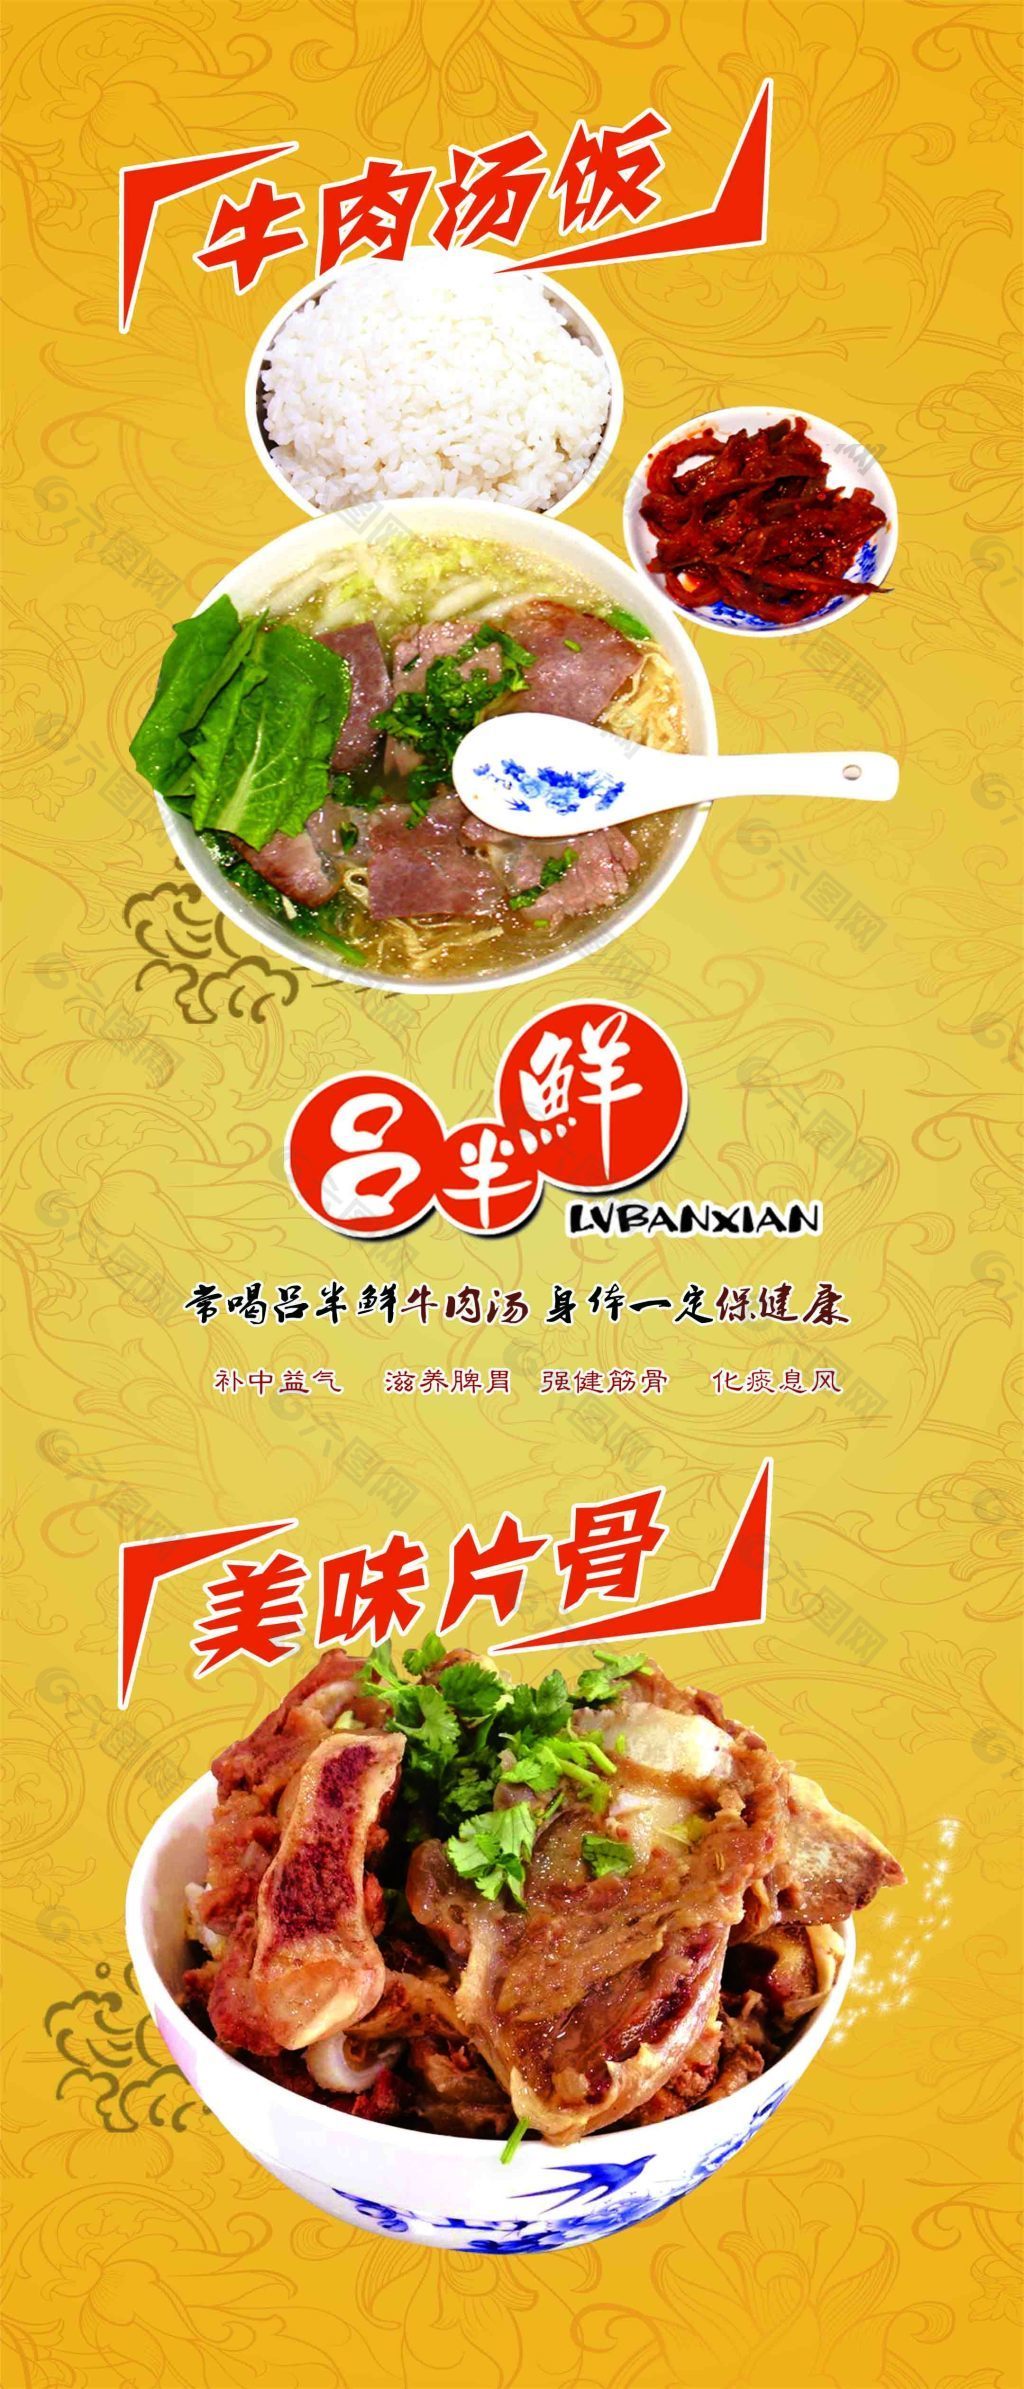 吕半仙牛肉汤饭广告